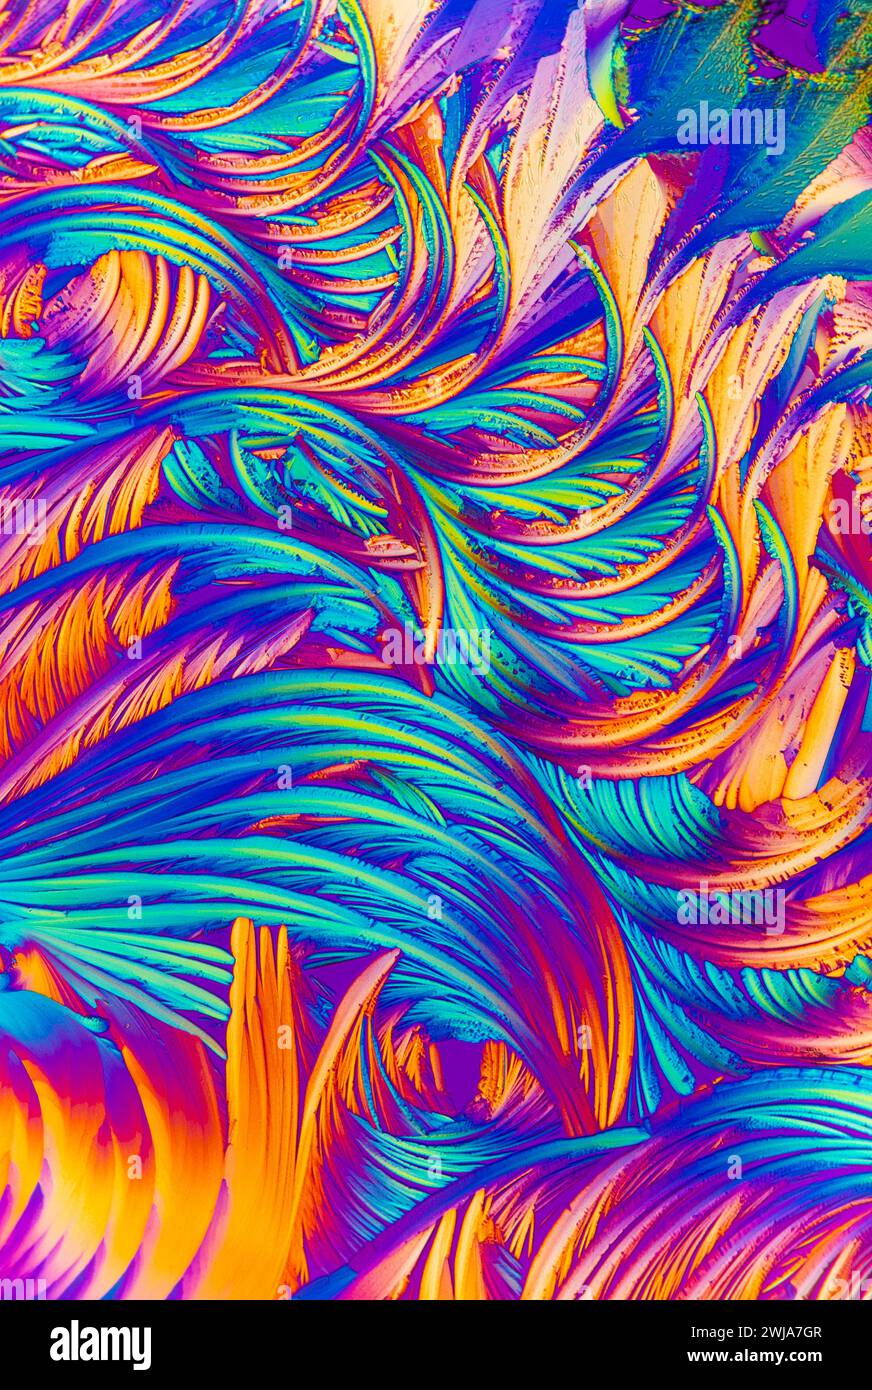 Une vue microscopique rapprochée de cristaux d'acide salicylique montrant un tourbillon fascinant de plumes dans des teintes bleu vif, violet et orange Banque D'Images